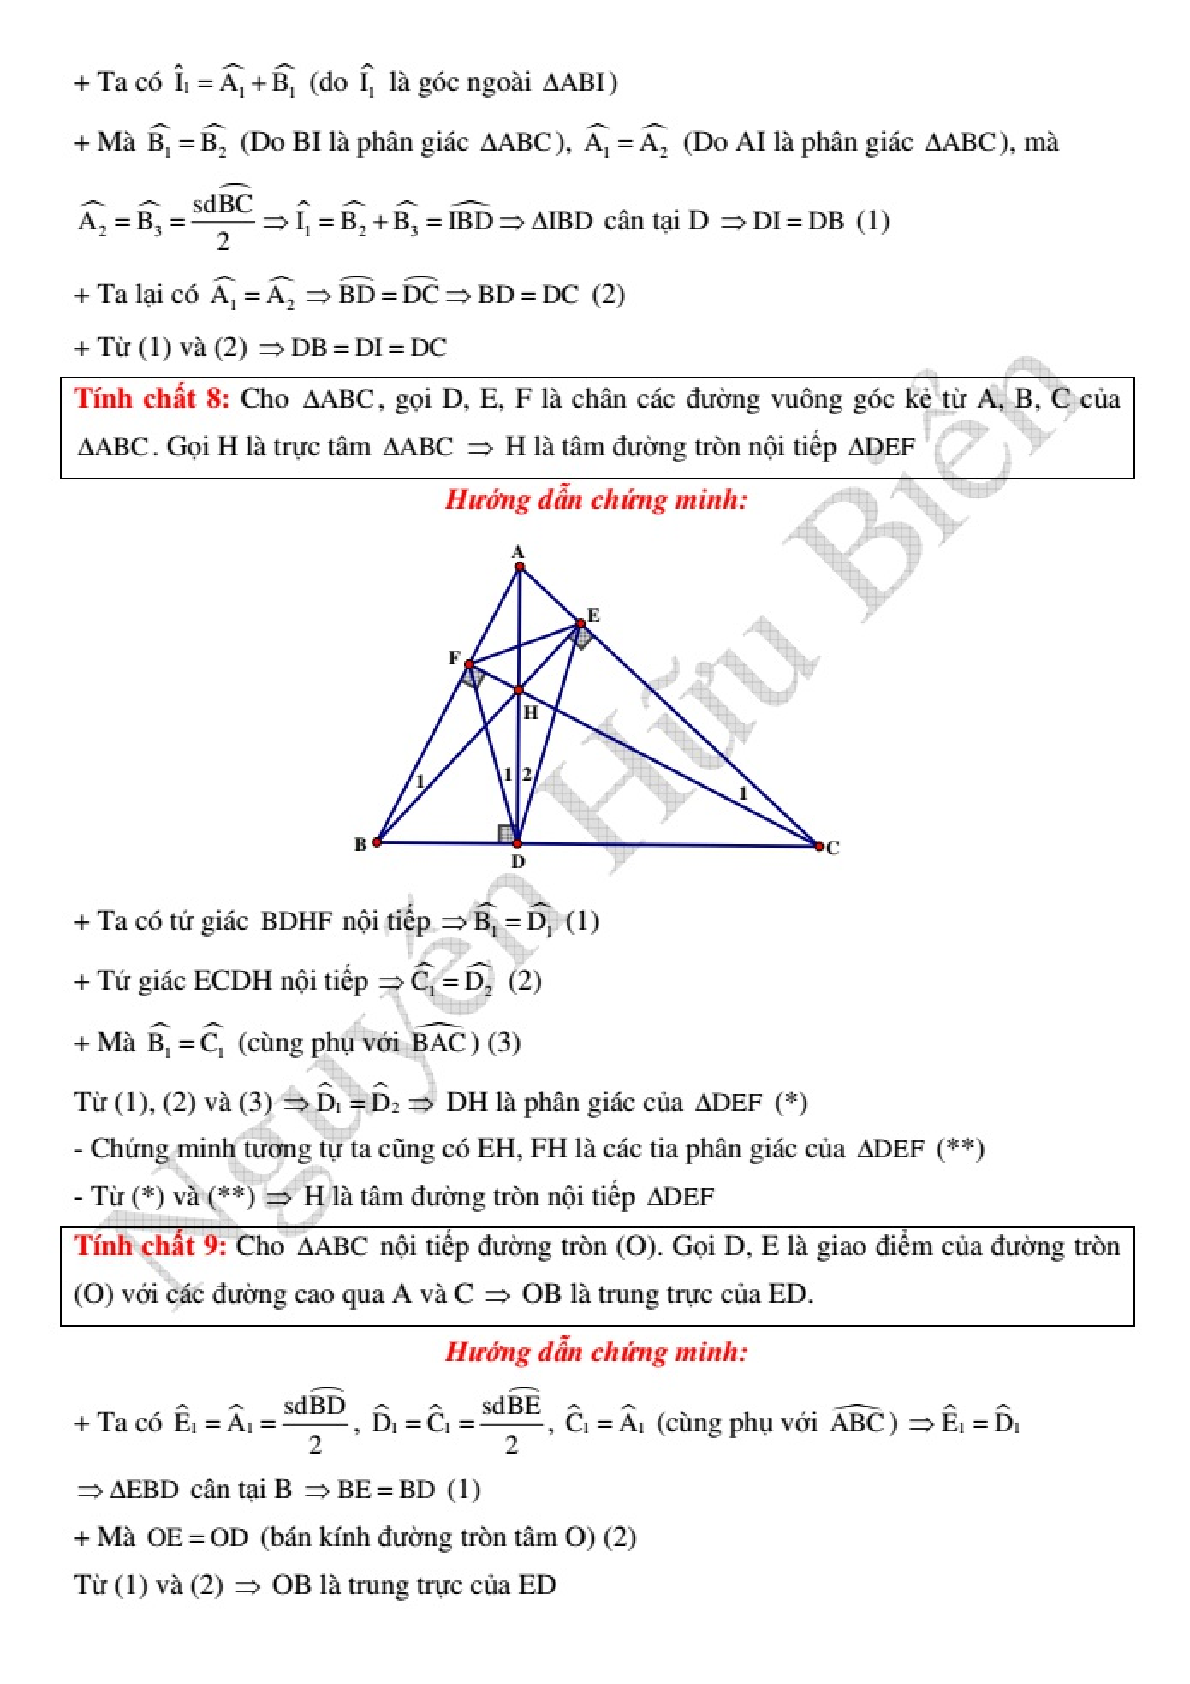 Kỹ thuật công phá hình học phẳng Oxy để giải nhanh (trang 7)